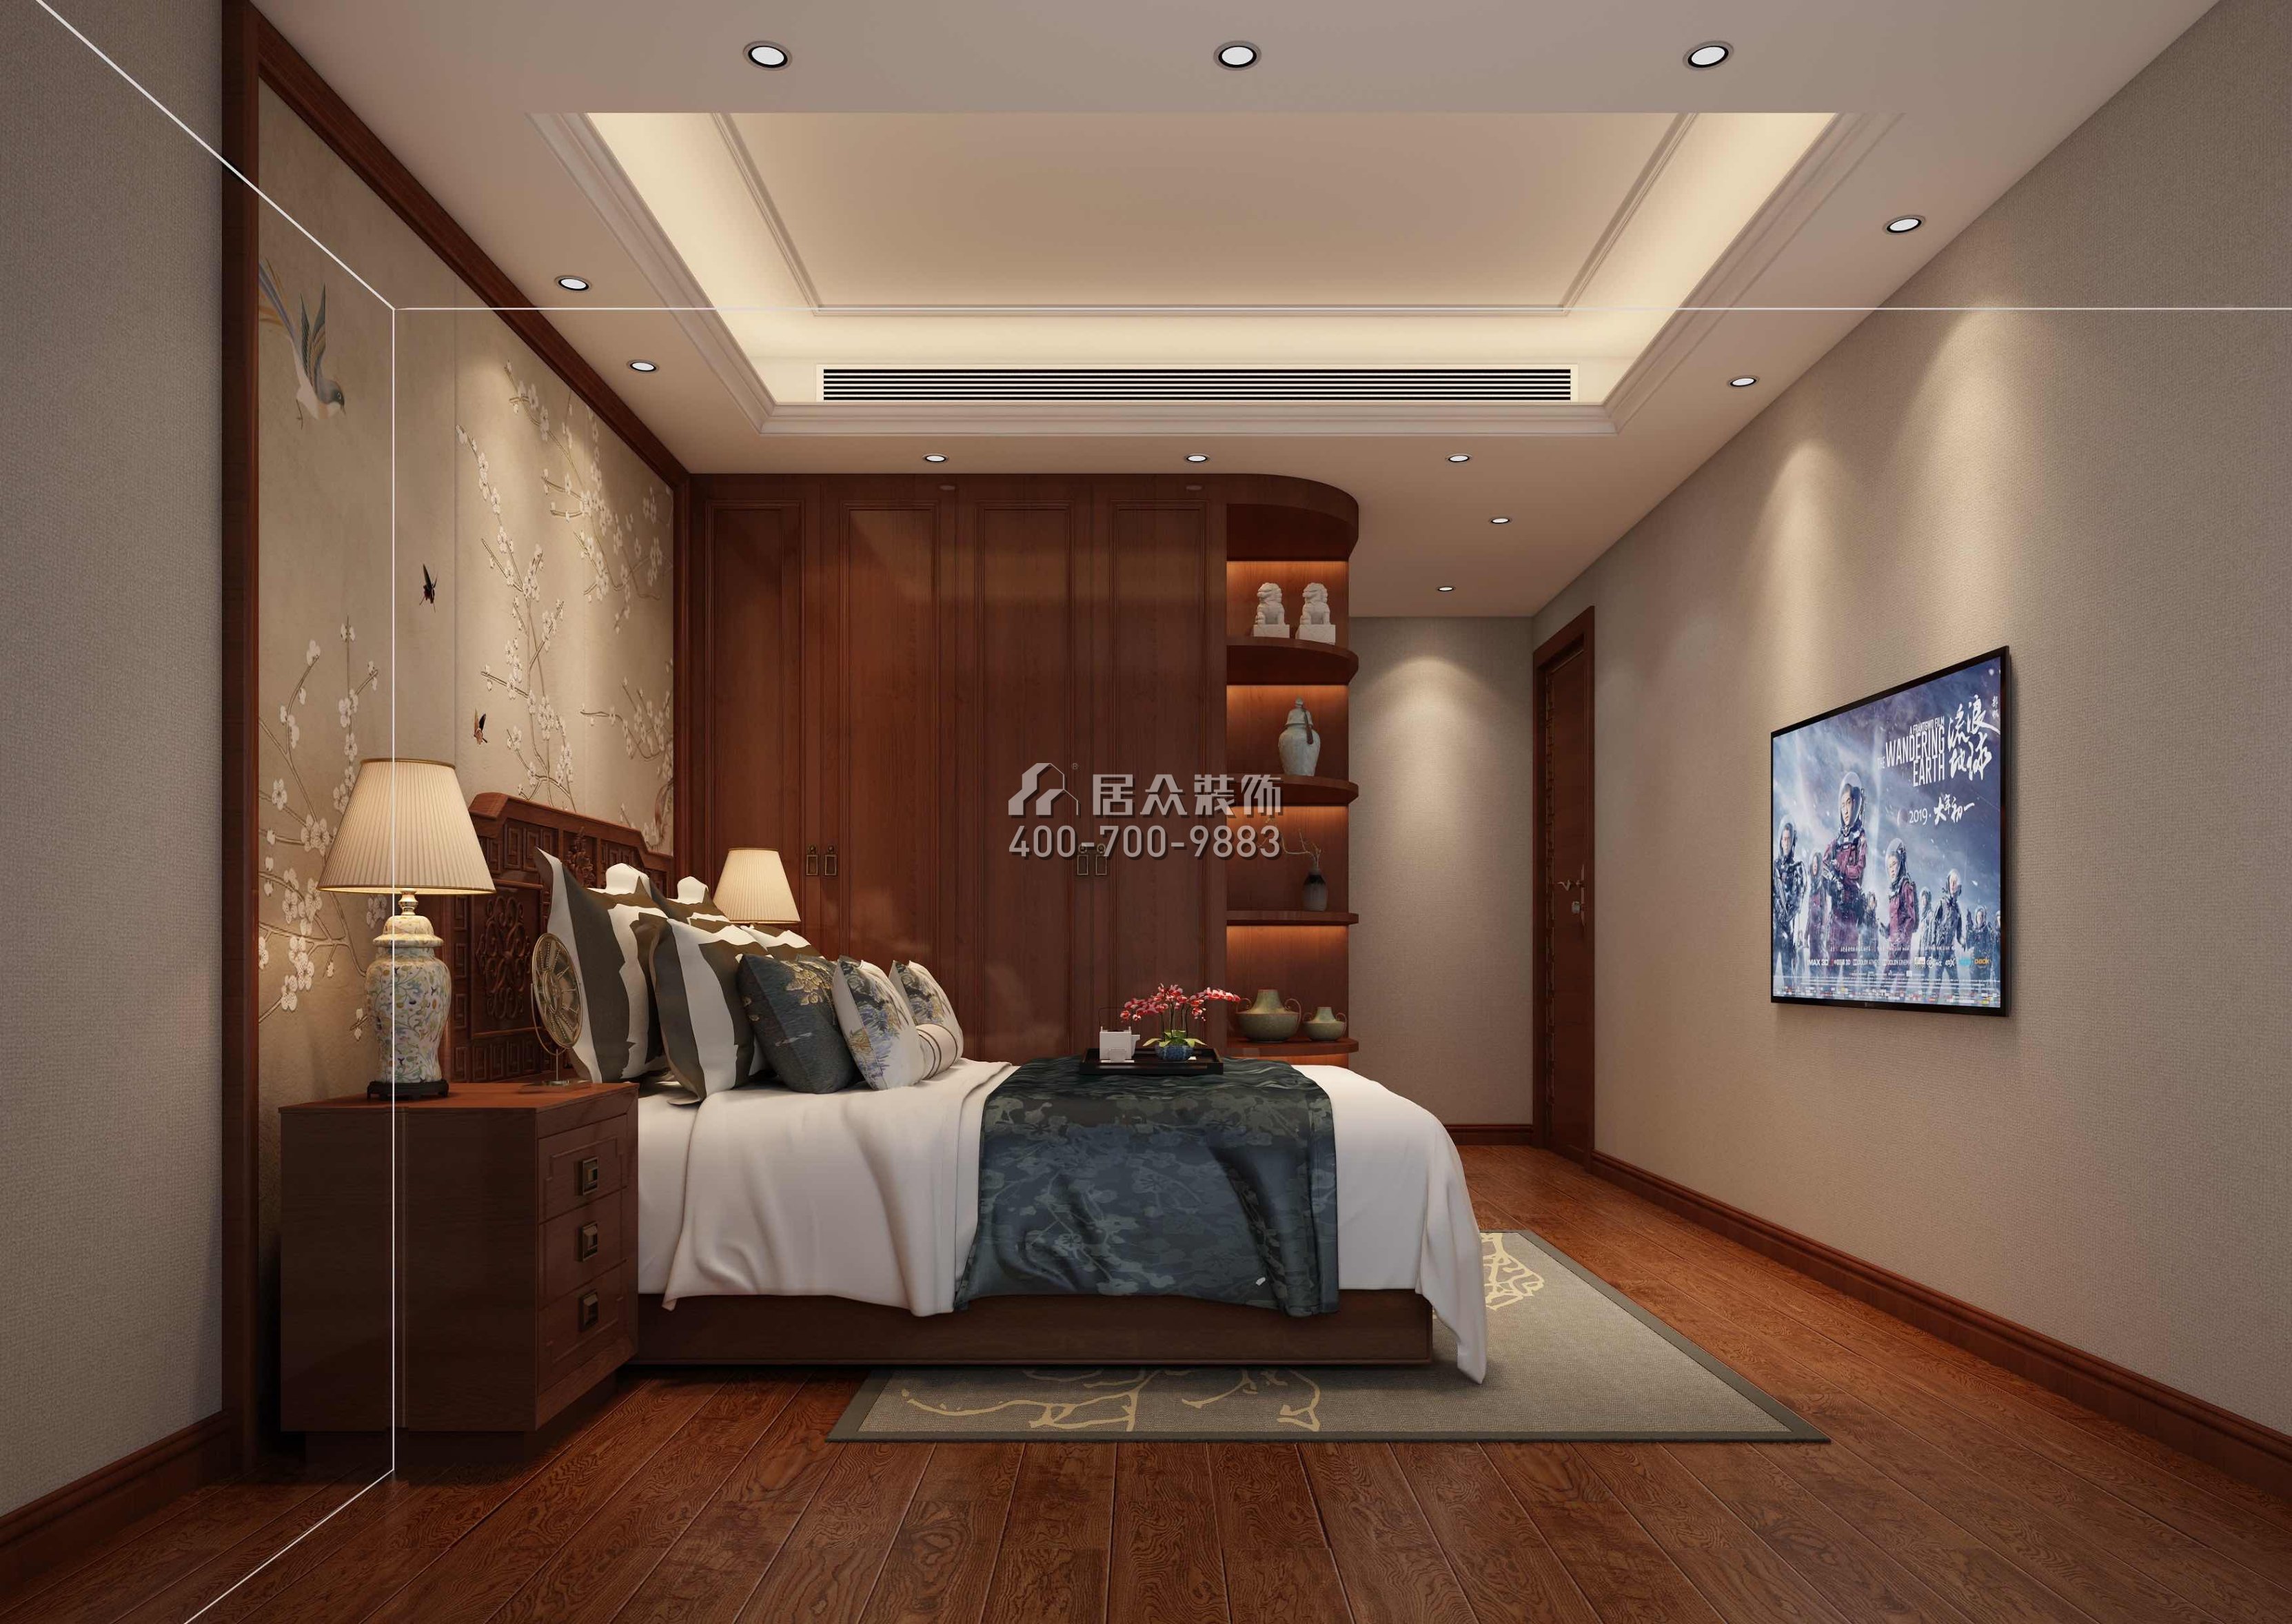 天鹅湖花园三期122平方米中式风格平层户型卧室装修效果图